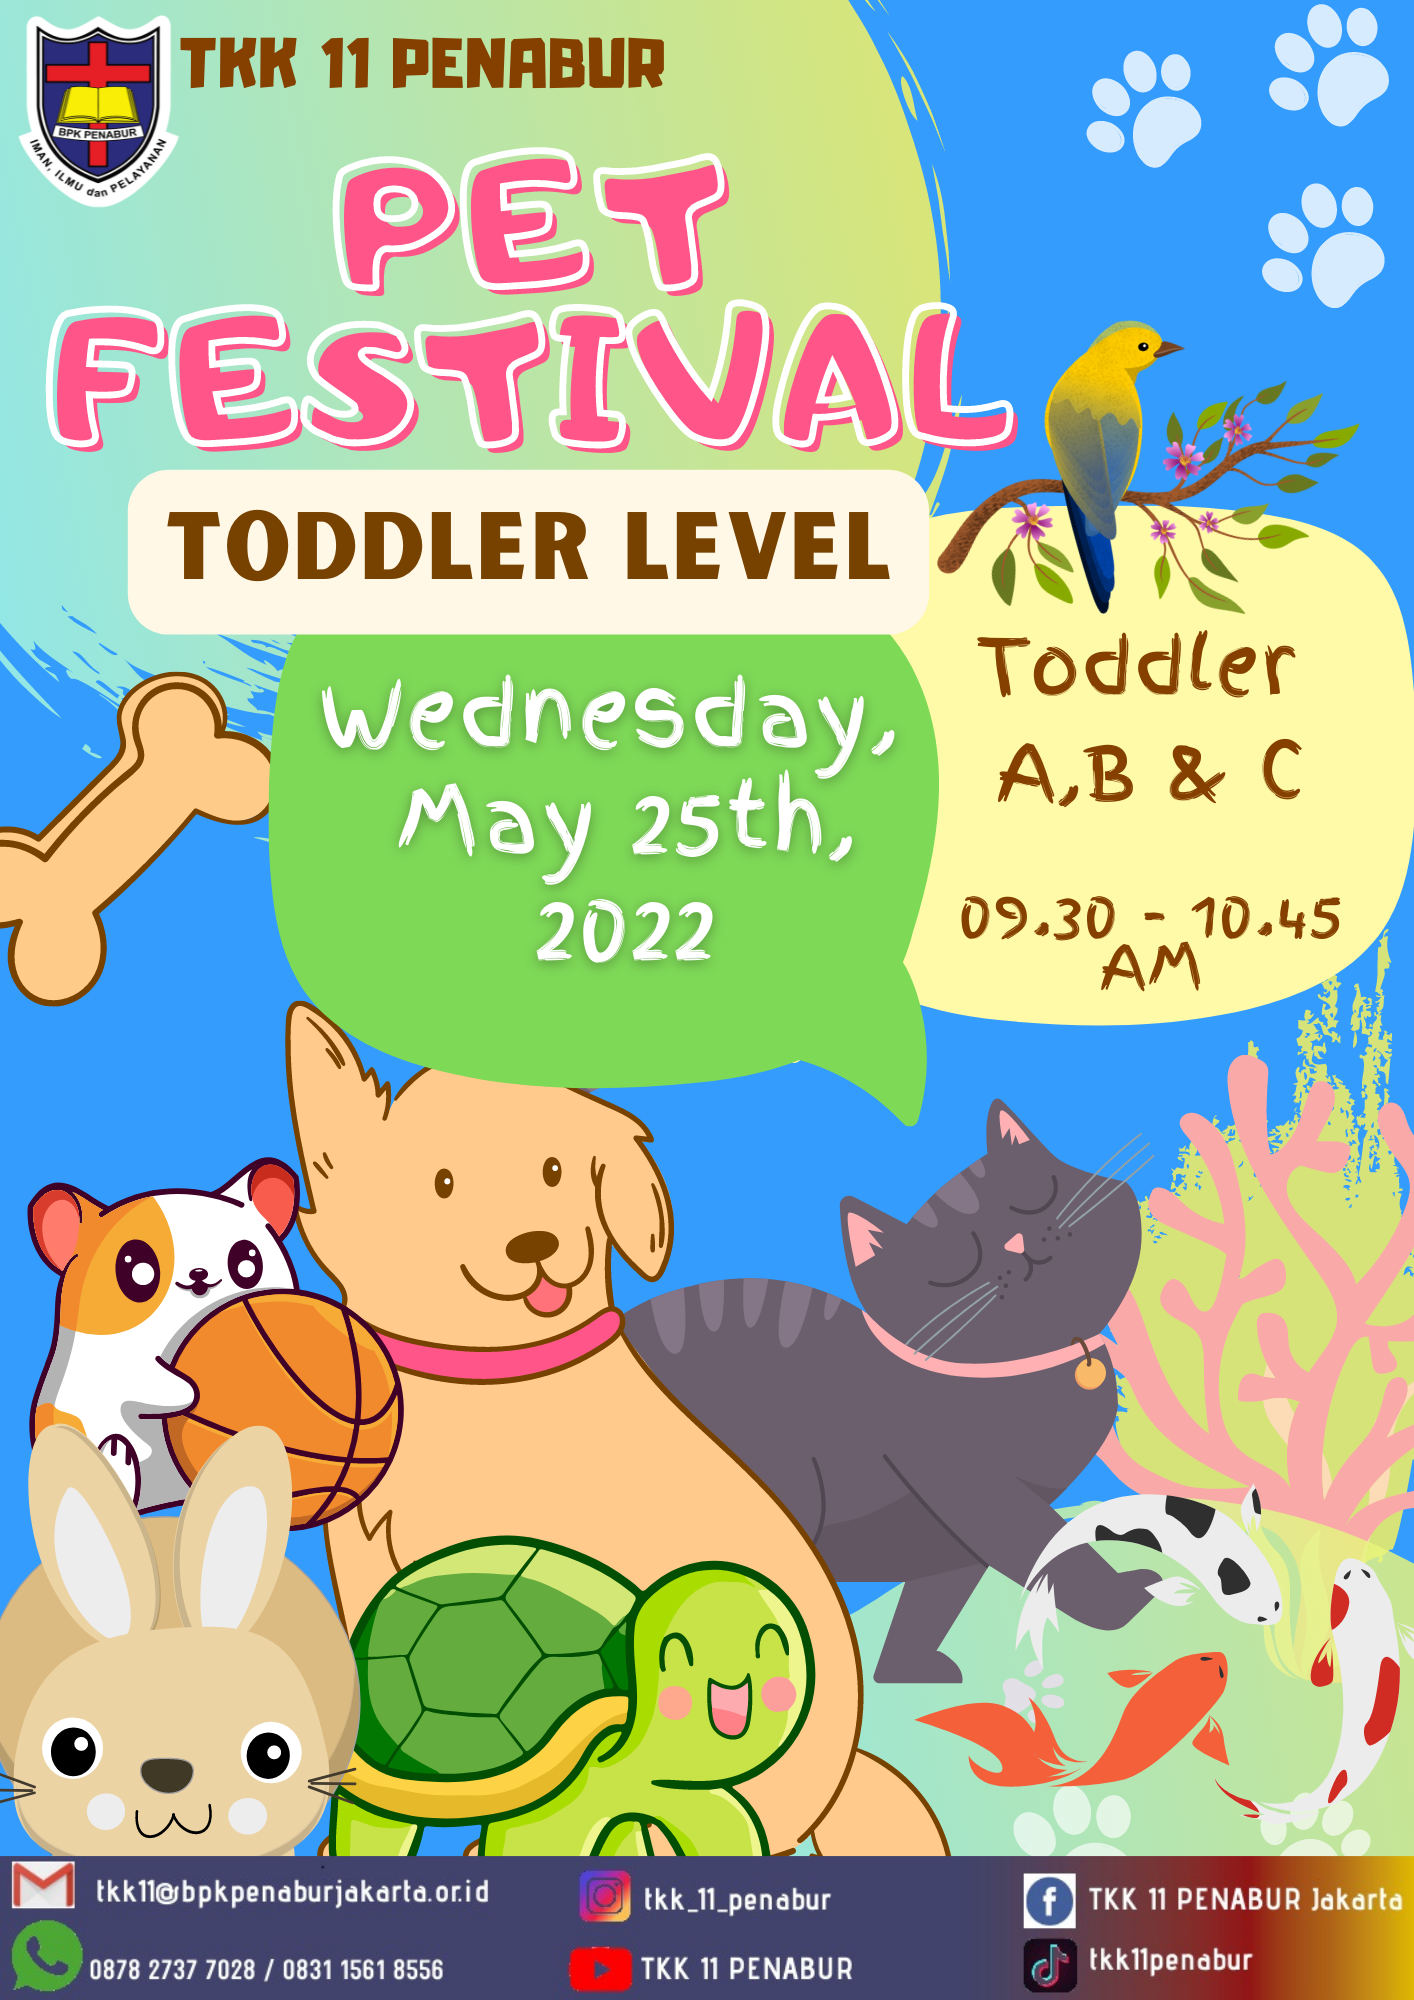 Toddler 4th Festival : Pet Festival